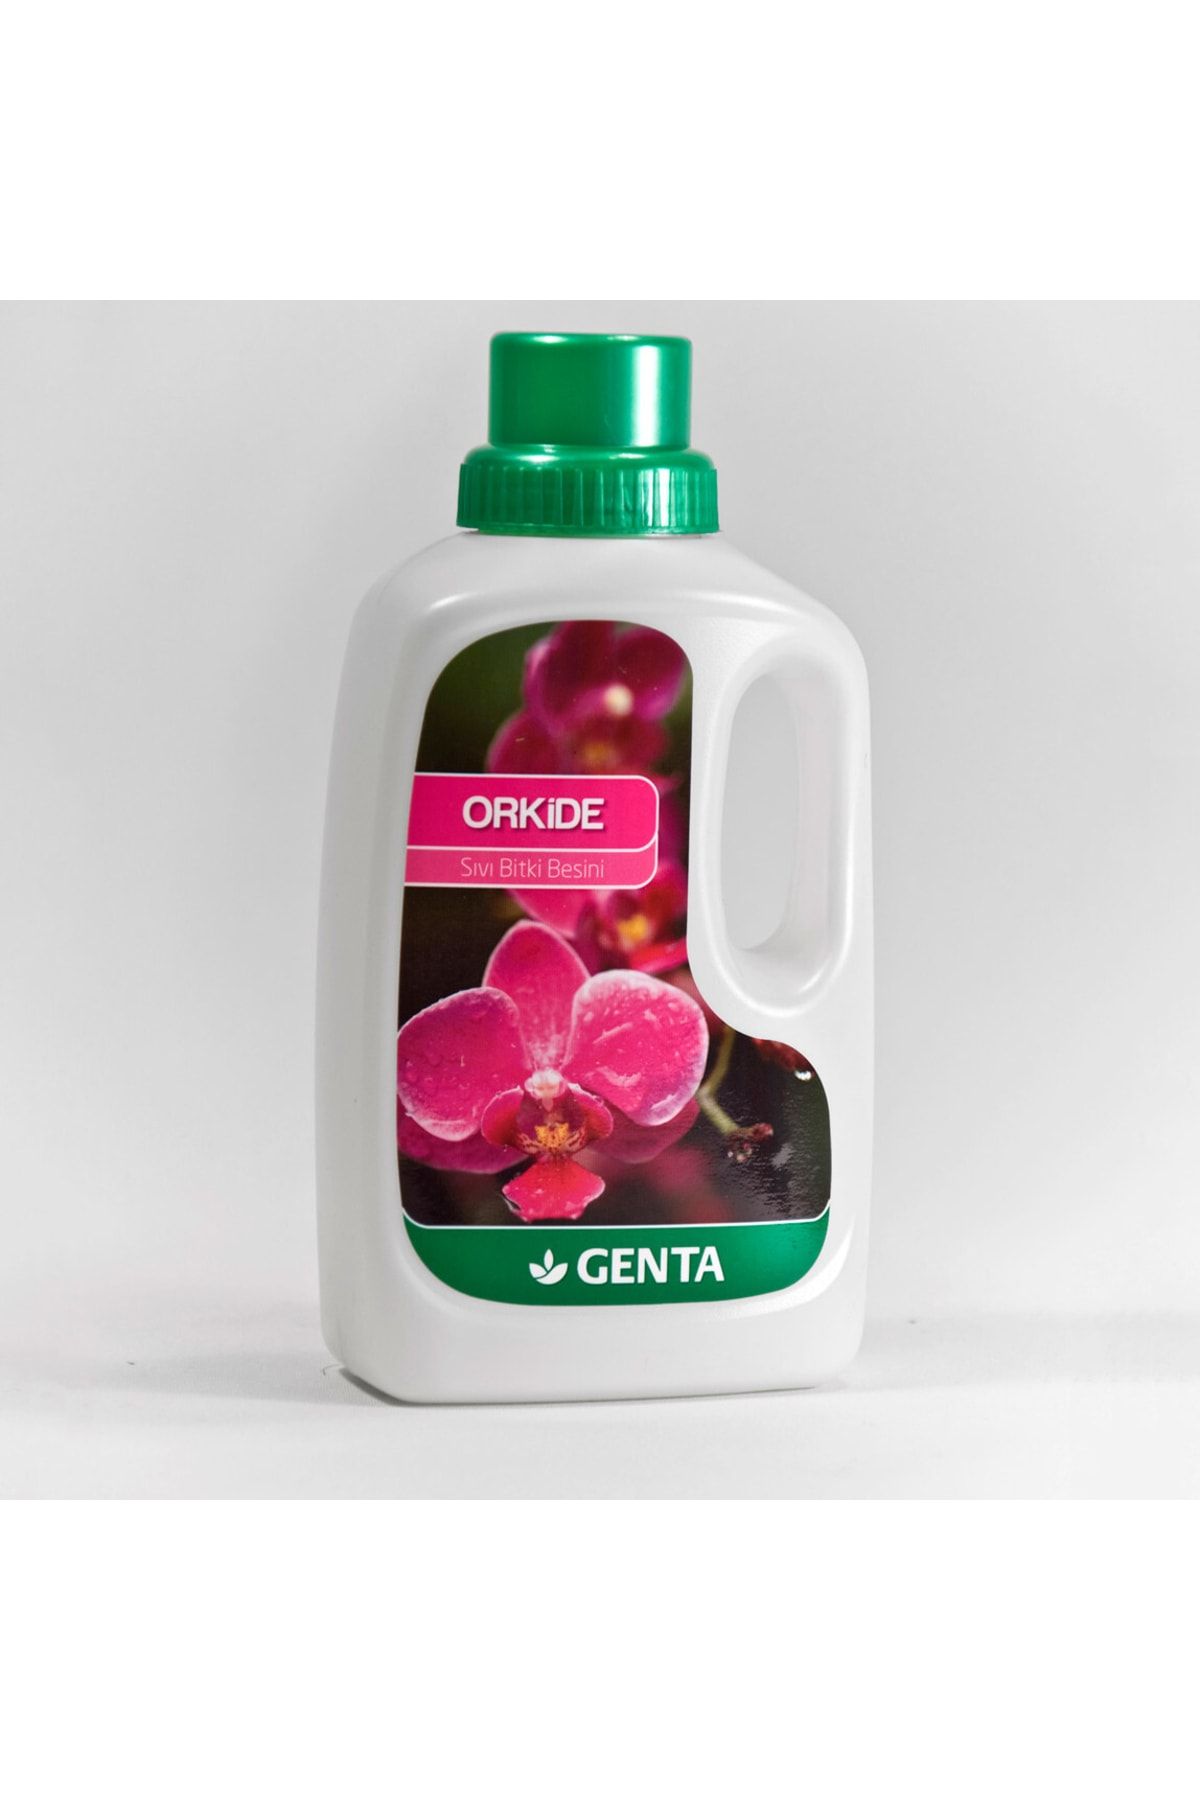 Genta Orkide Için Sıvı Besin Sıvı Gübre 500 ml